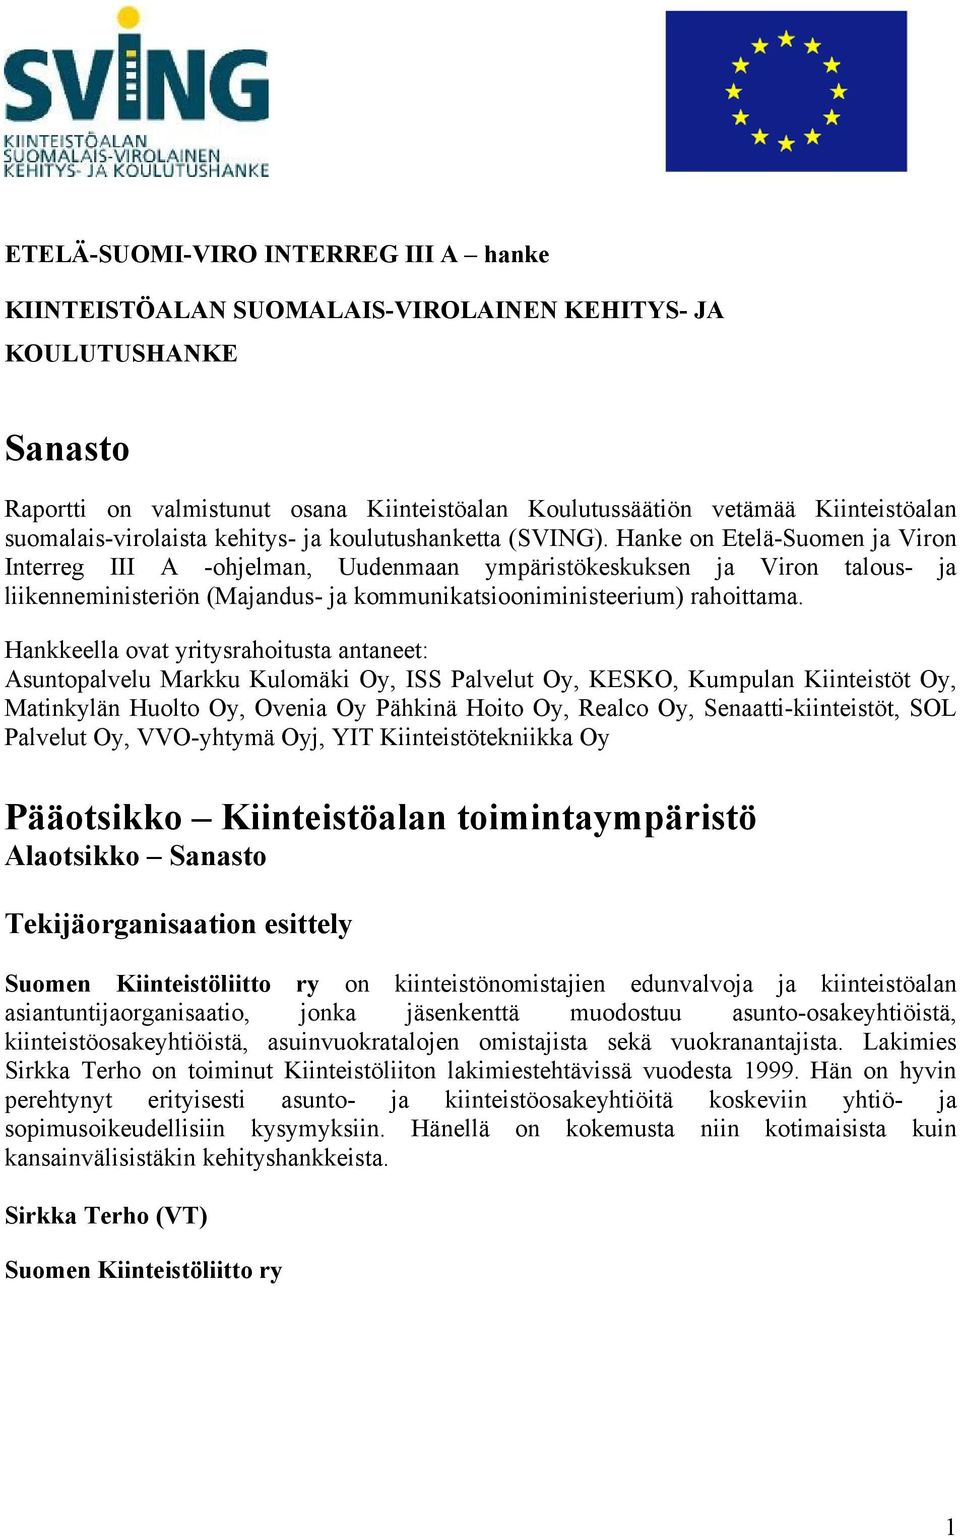 Hanke on Etelä-Suomen ja Viron Interreg III A -ohjelman, Uudenmaan ympäristökeskuksen ja Viron talous- ja liikenneministeriön (Majandus- ja kommunikatsiooniministeerium) rahoittama.